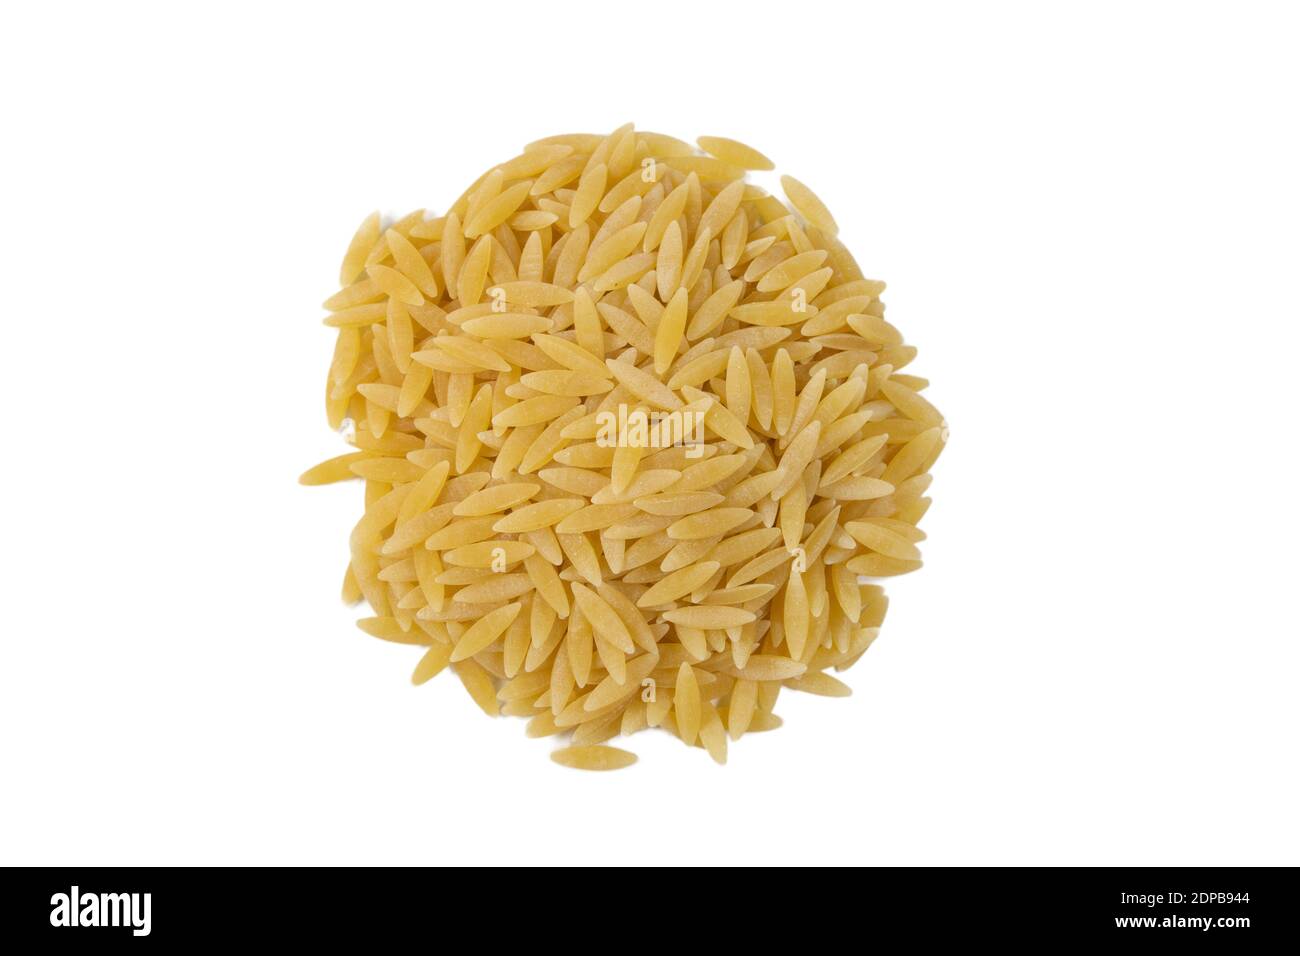 In Griechenland genannt kritharaki. In Italien genannt Orzo. Reis geformte Pasta Haufen isoliert auf weißem Hintergrund. Art der Pasta. Lebensmittelzutat. Stockfoto